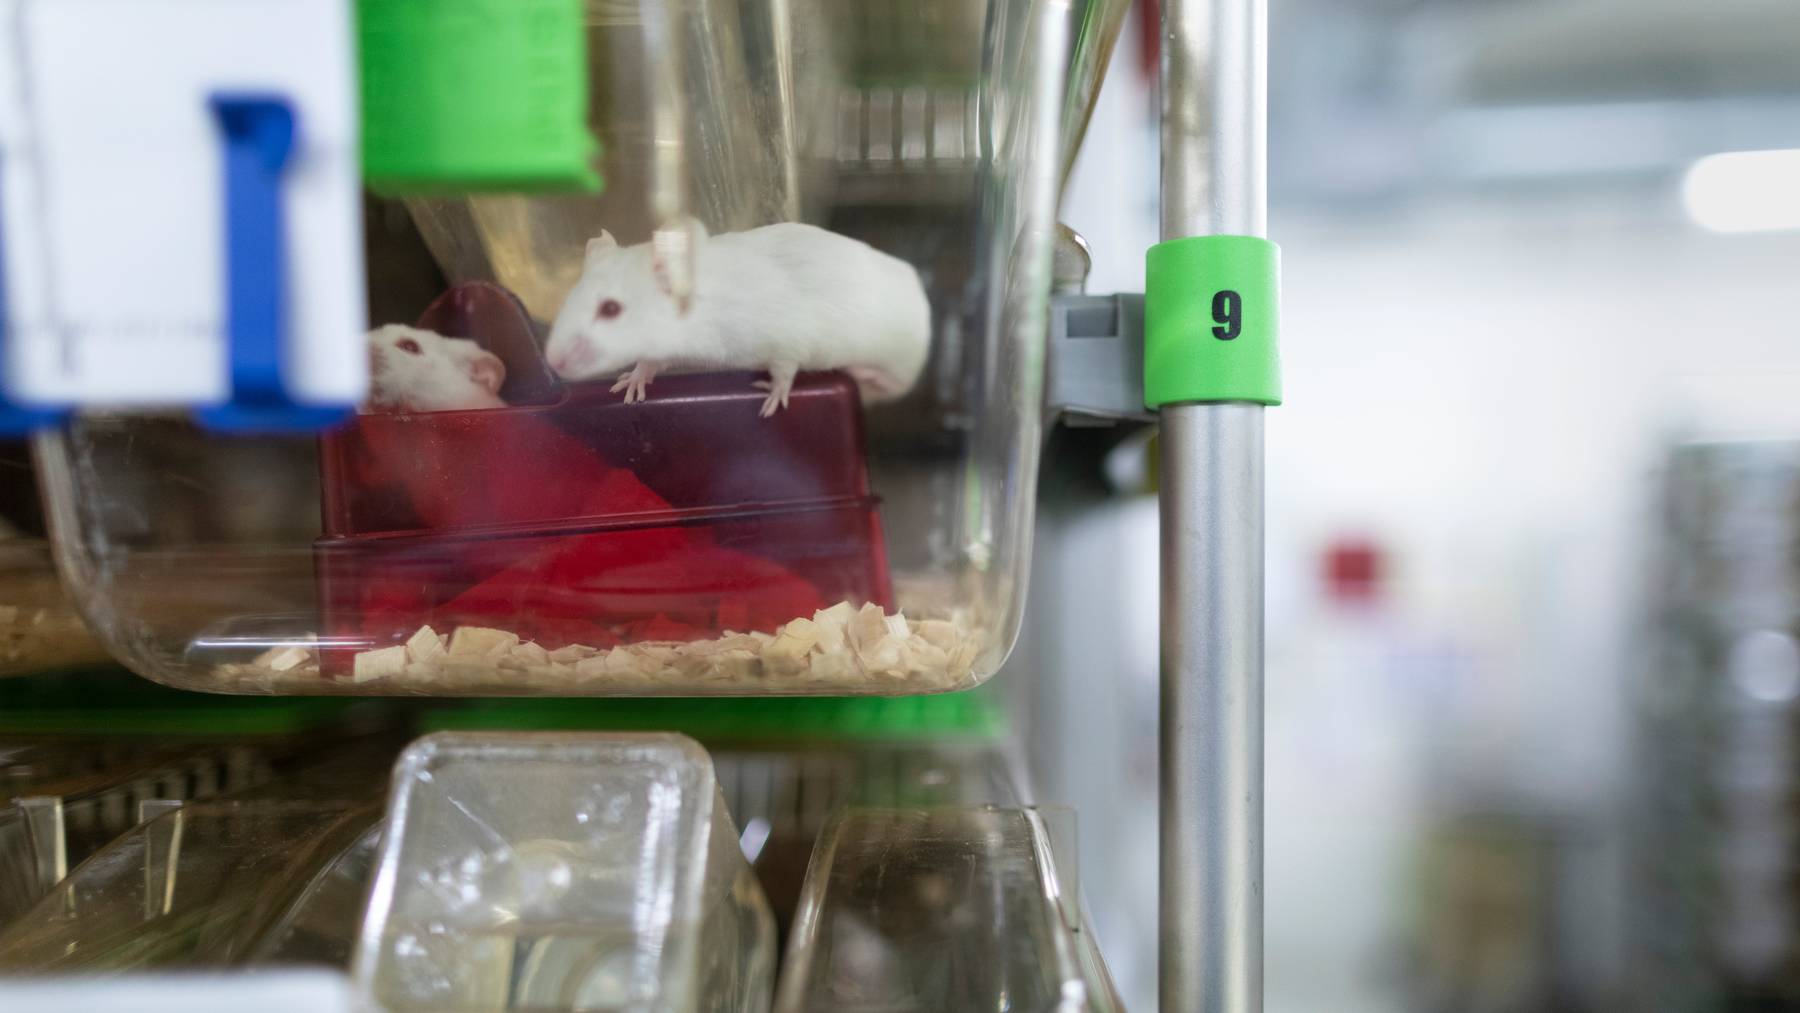 Trotz starker Standardisierung litten Tierversuche an ihrer geringen Reproduzierbarkeit, schliesst eine internationale Forschergruppe.